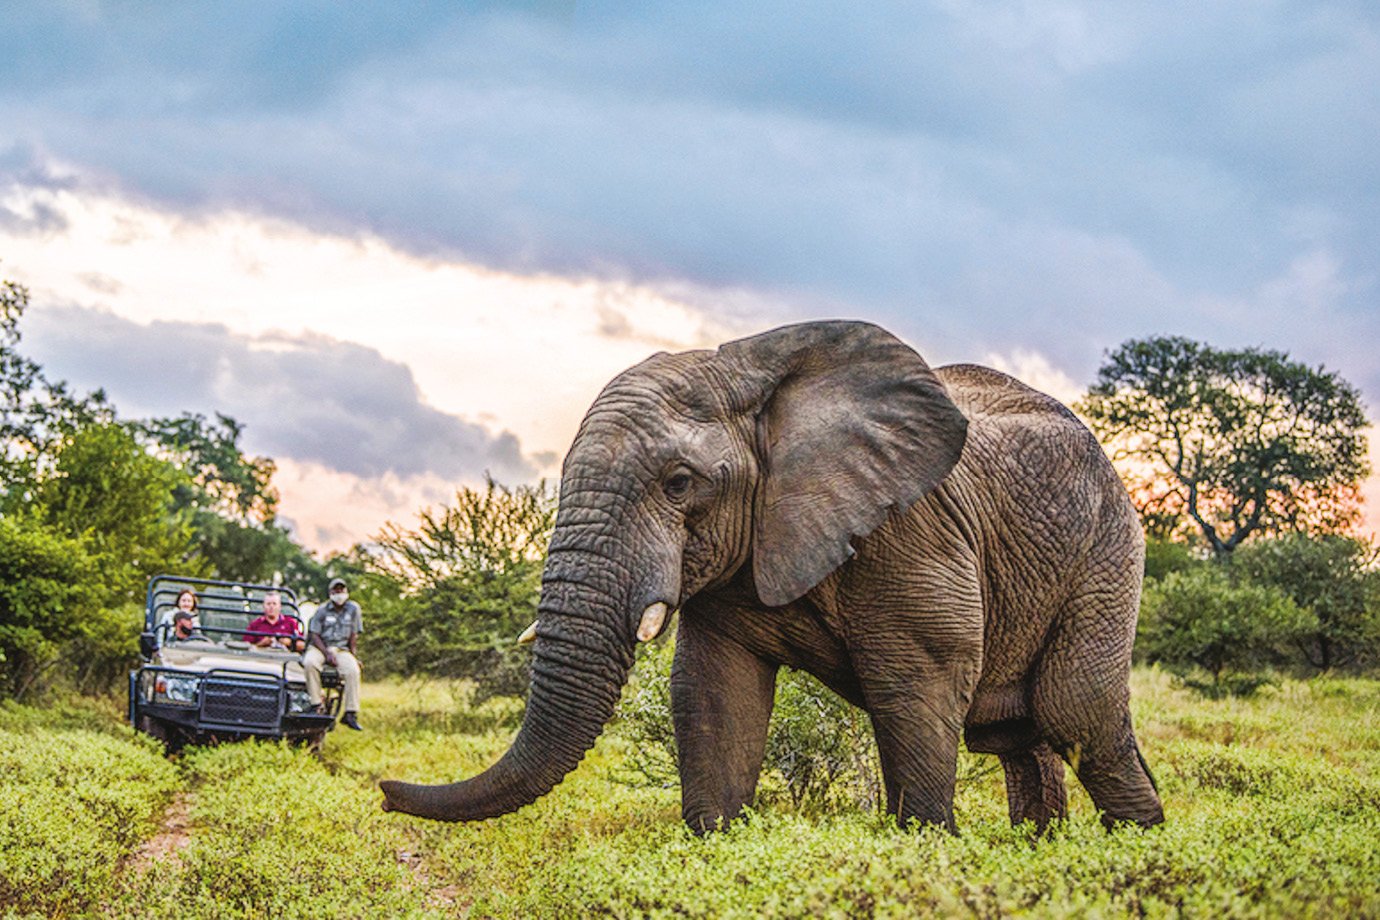 Botsuana ameaça enviar 20 mil elefantes à Alemanha; entenda